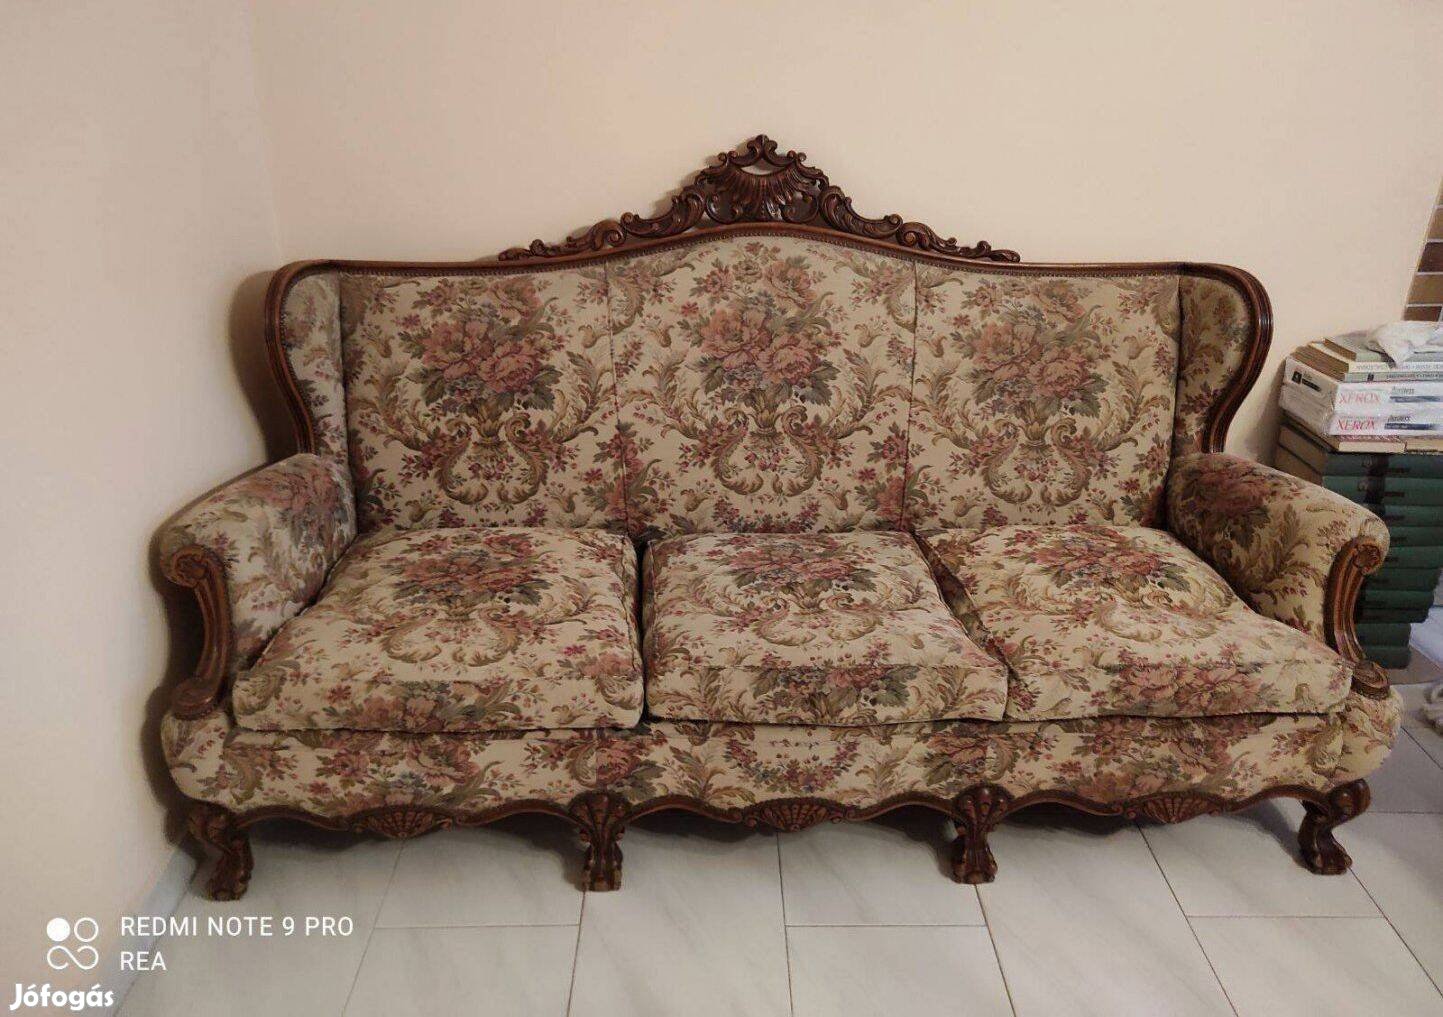 Eladó hibátlan állapotban lévő antik barokk kanapé